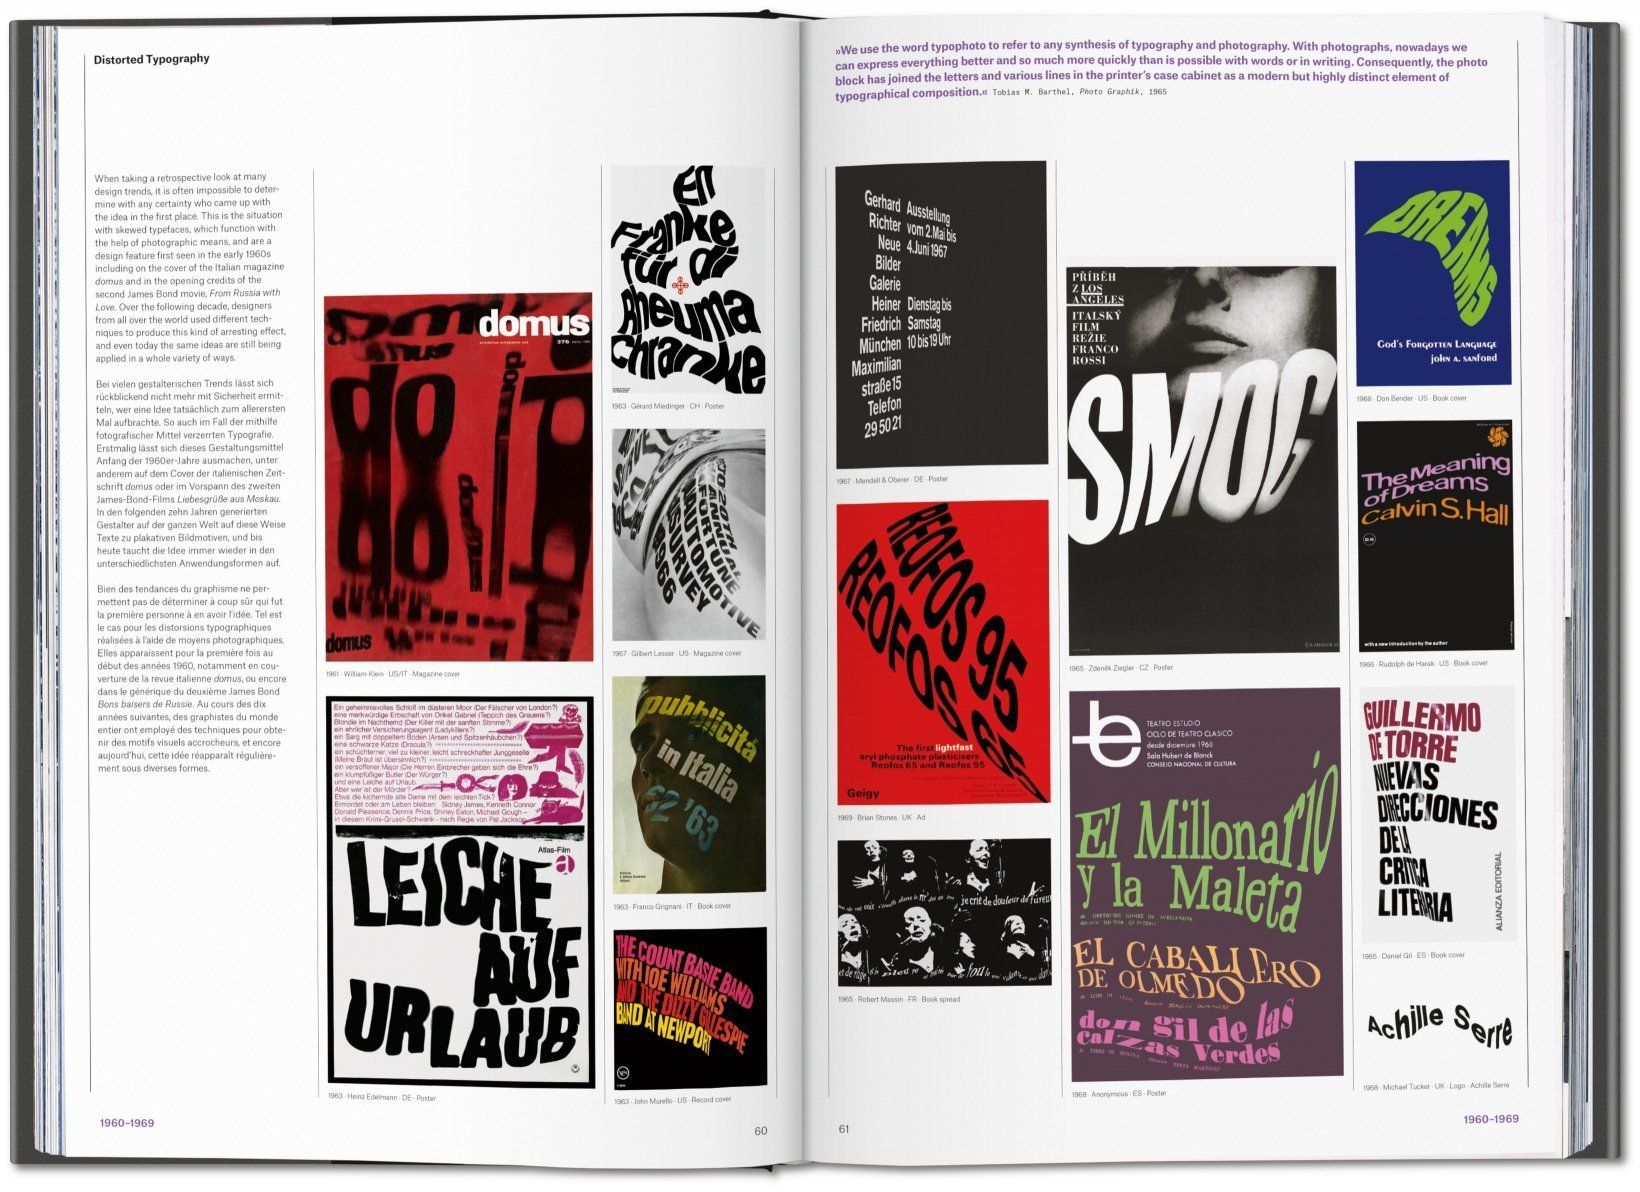  The History of Graphic Design, Vol 2: 1960 - Today - Julius Wiedemann - 9783836570374 - Taschen 